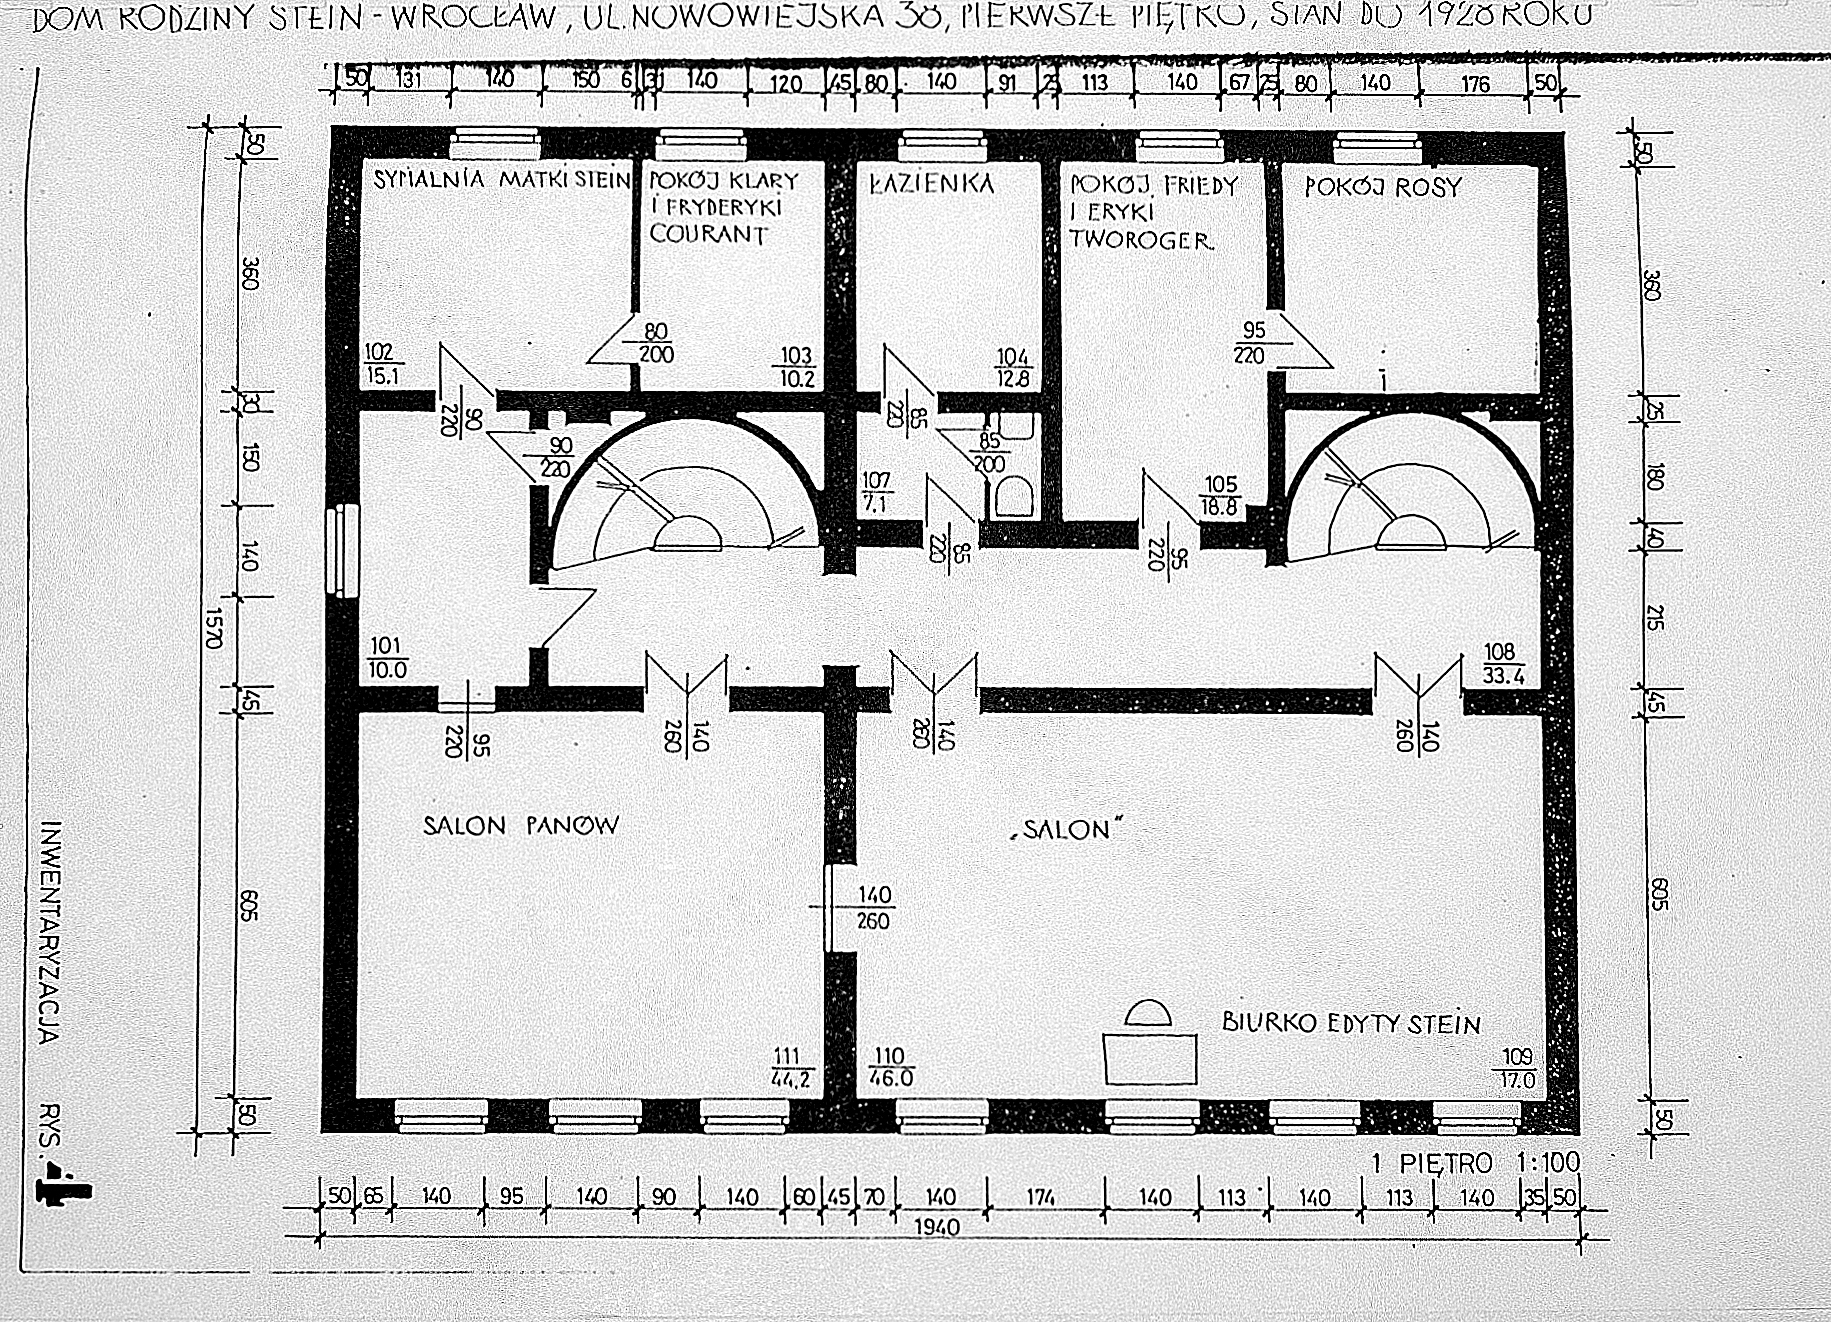 Plan domu Steinów przy Michaelisstrasse 38 we Wrocławiu przed 1928 rokiem, I piętro, archiwum Towarzystwa im. Edyty Stein we Wrocławiu